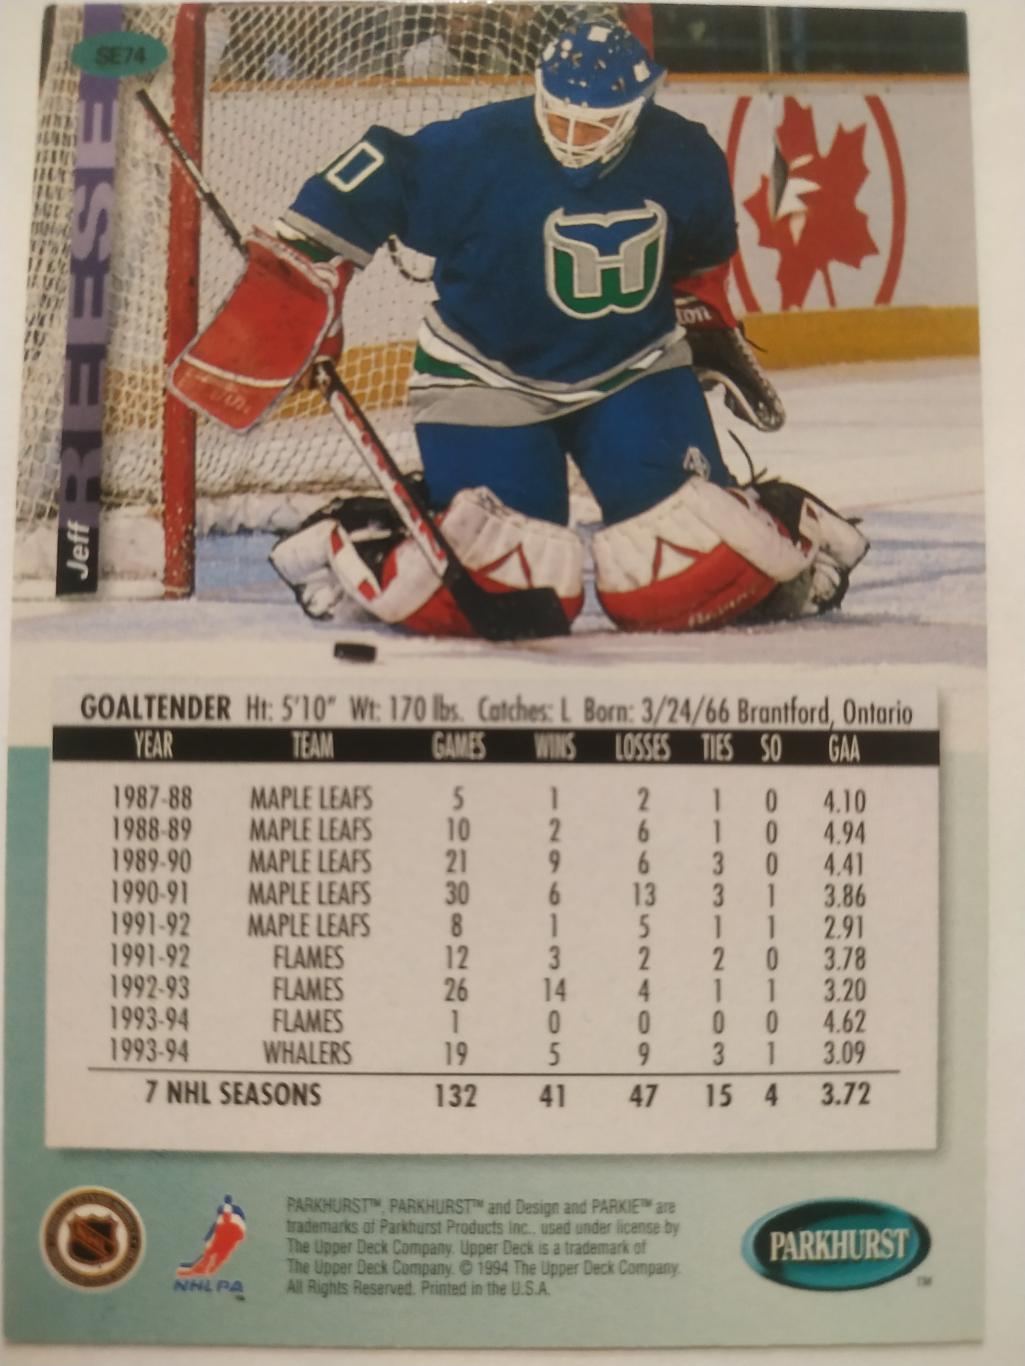 ХОККЕЙ КАРТОЧКА НХЛ PARKHURST 1994-95 NHL JEFF REESE HARTFORD WHALERS #SE74 1